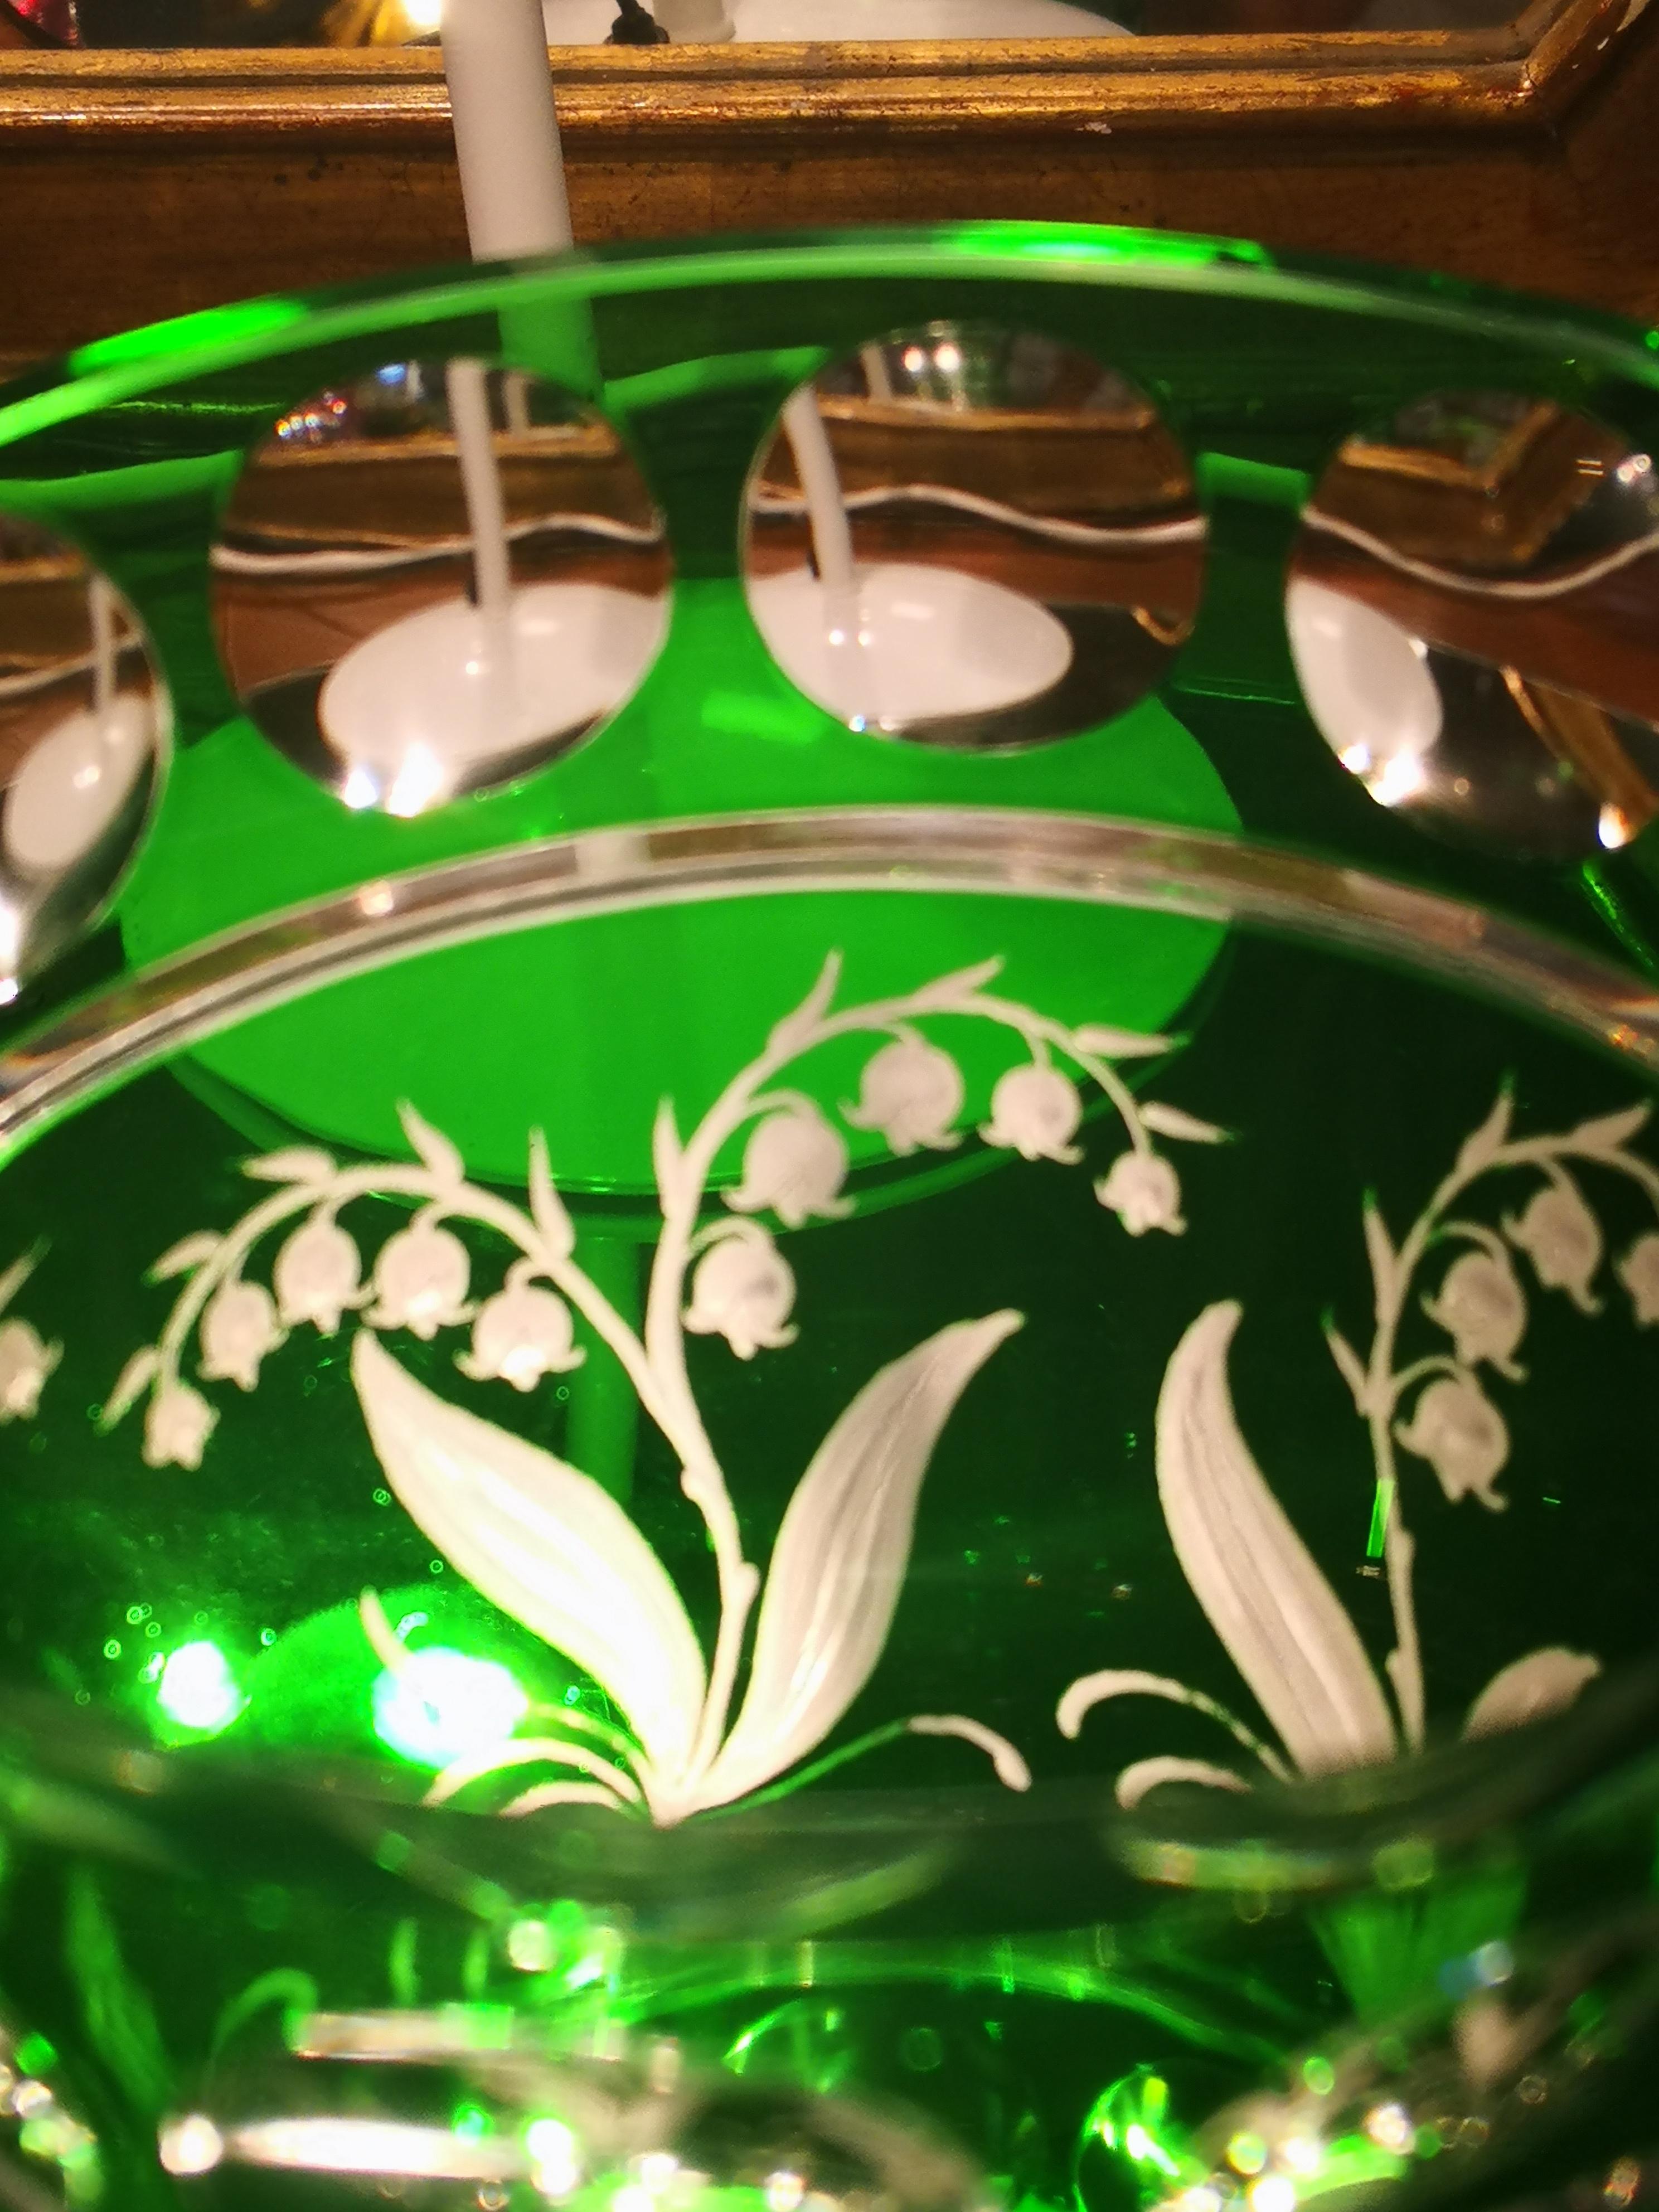 Handgeblasene Kristallvase in grüner Farbe mit Pfingstrosen rundherum. Das Dekor im Landhausstil wird in der Sofina Boutique Kitzbühel von Glaskünstlern rund um Bayern freihändig graviert. Sofina Glas und Porzellan wurde 2013 in Bayern gegründet und